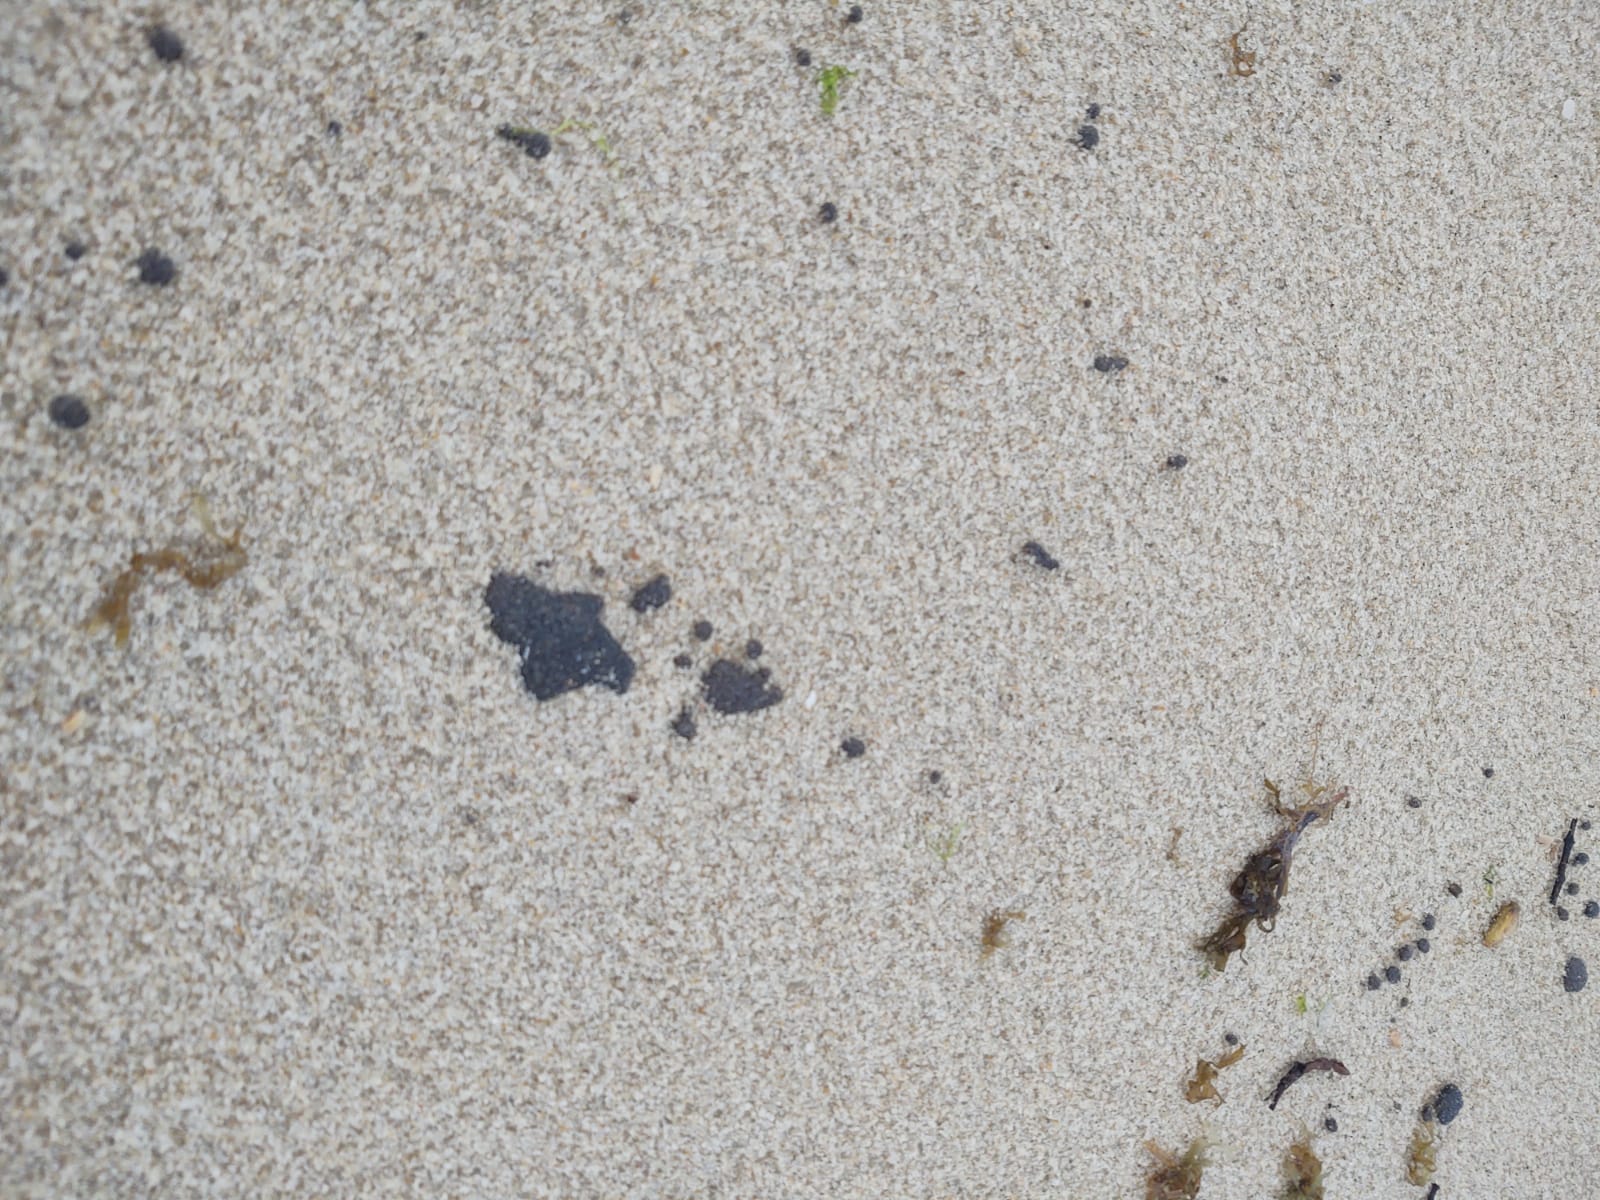 COMUNICADO – Manchas de óleo encontradas no litoral cearense